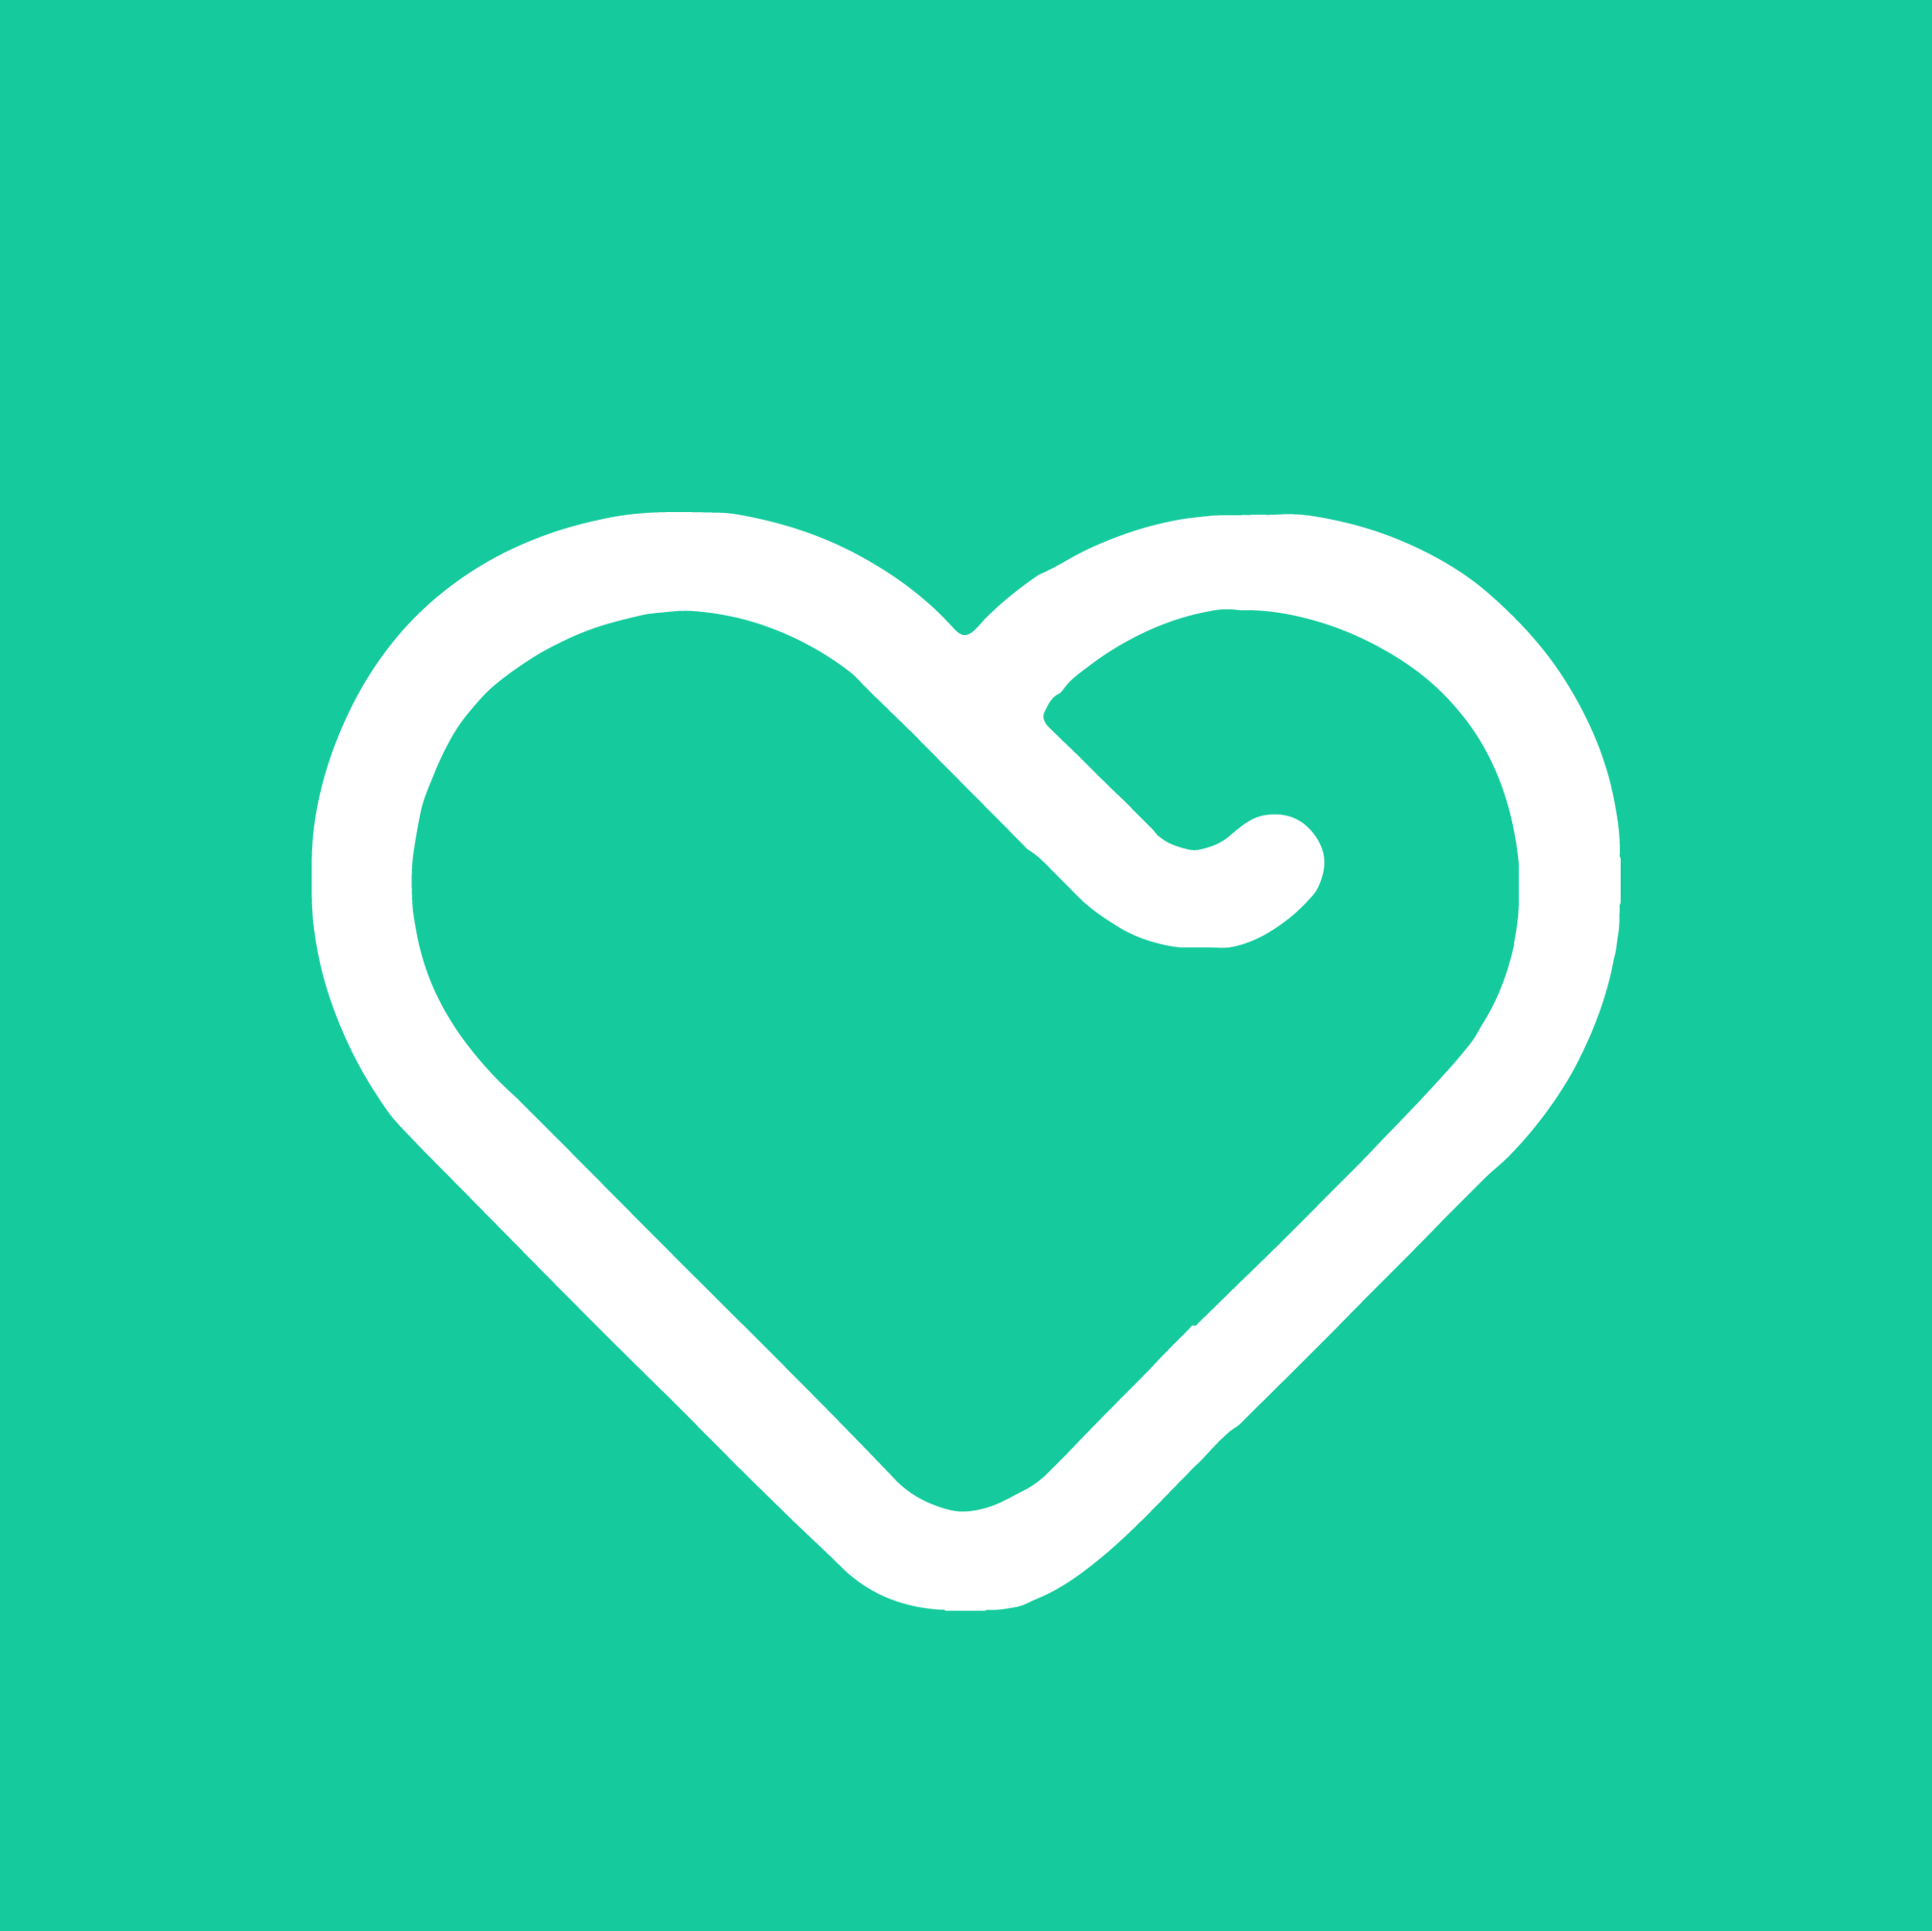 Yesil Health - und Gesundheitshilfe -App für personalisierte Gesundheitsberatung und Empfehlungen